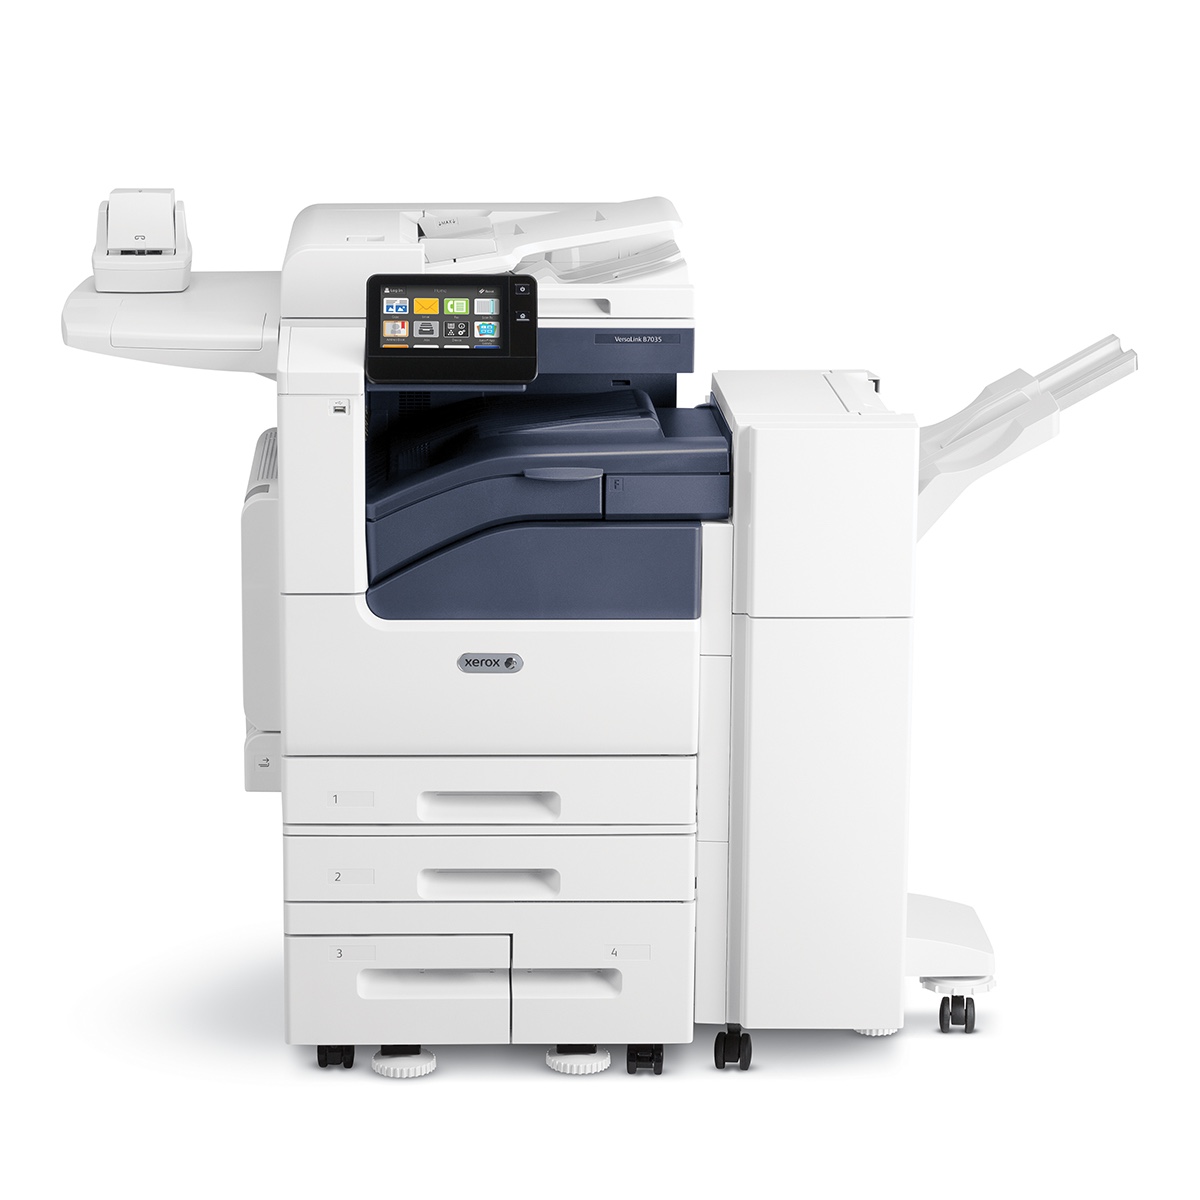 Xerox Copiers:  The Xerox VersaLink B7125/ENGD2 Copier